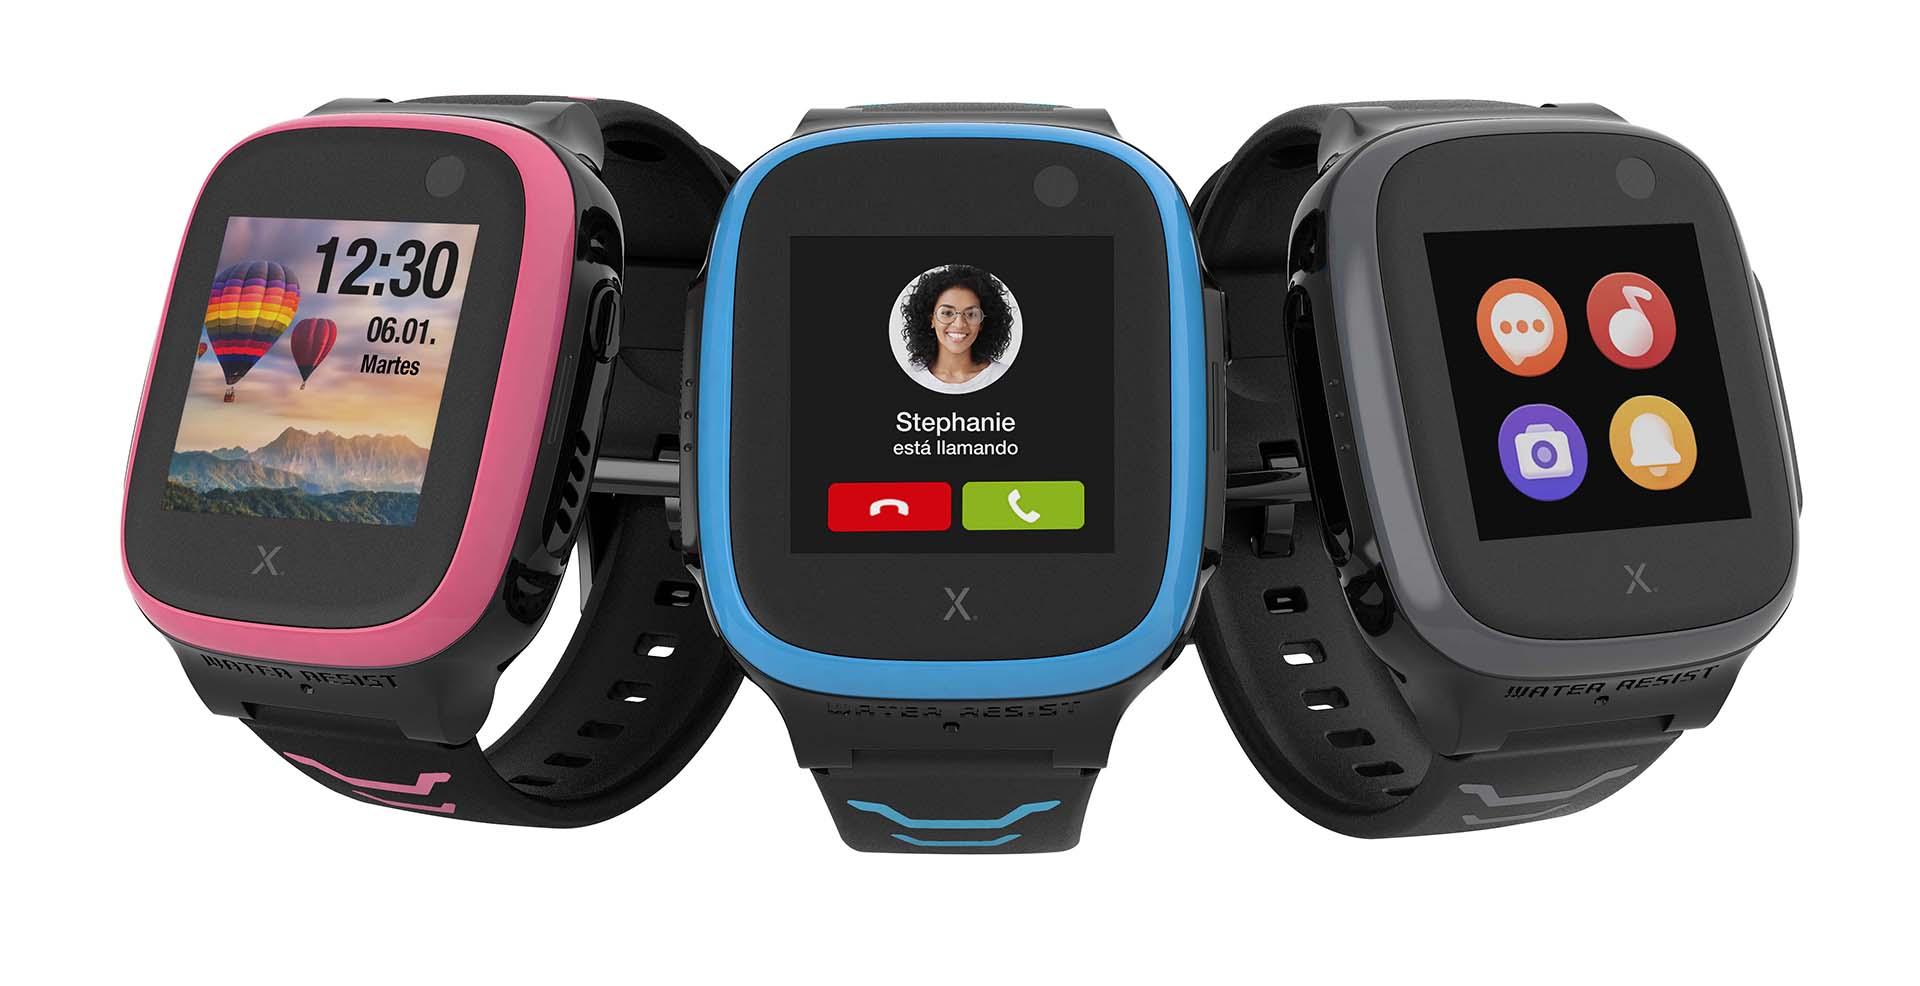 Xplora es la marca de referencia en teléfonos móviles en forma de smartwatch para población infantil